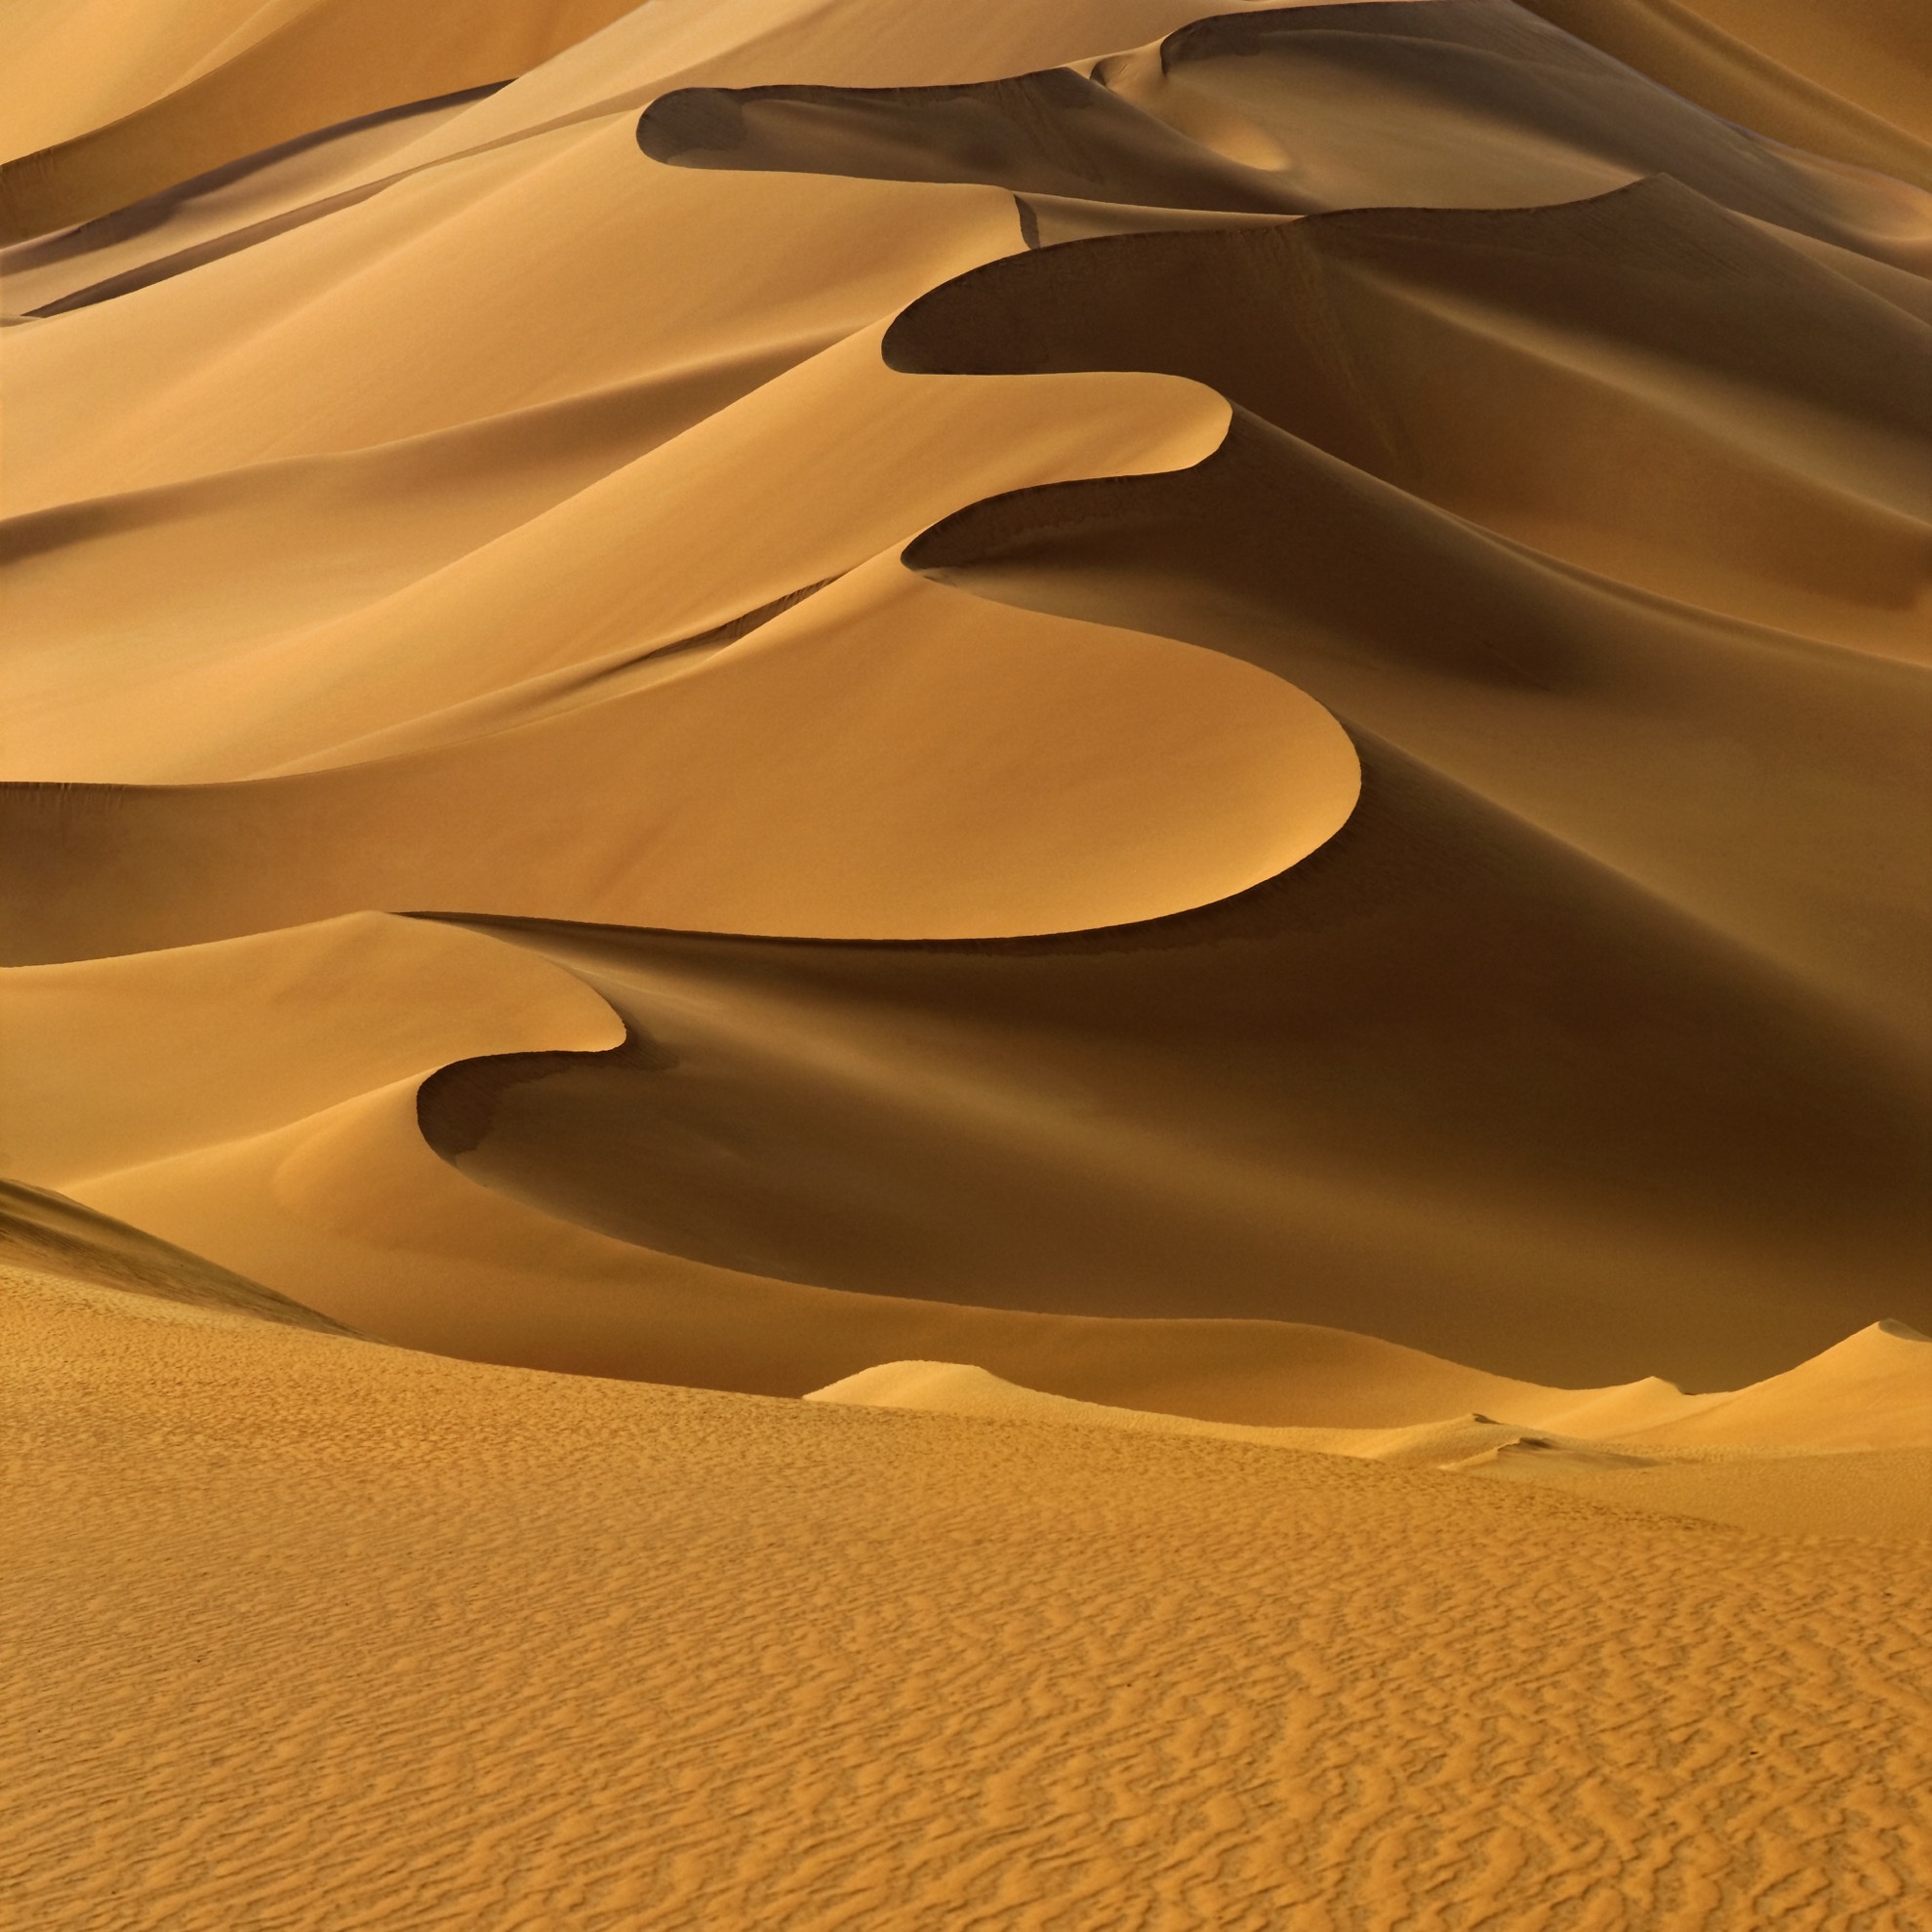 Cómo visitar el desierto del Sahara - 489